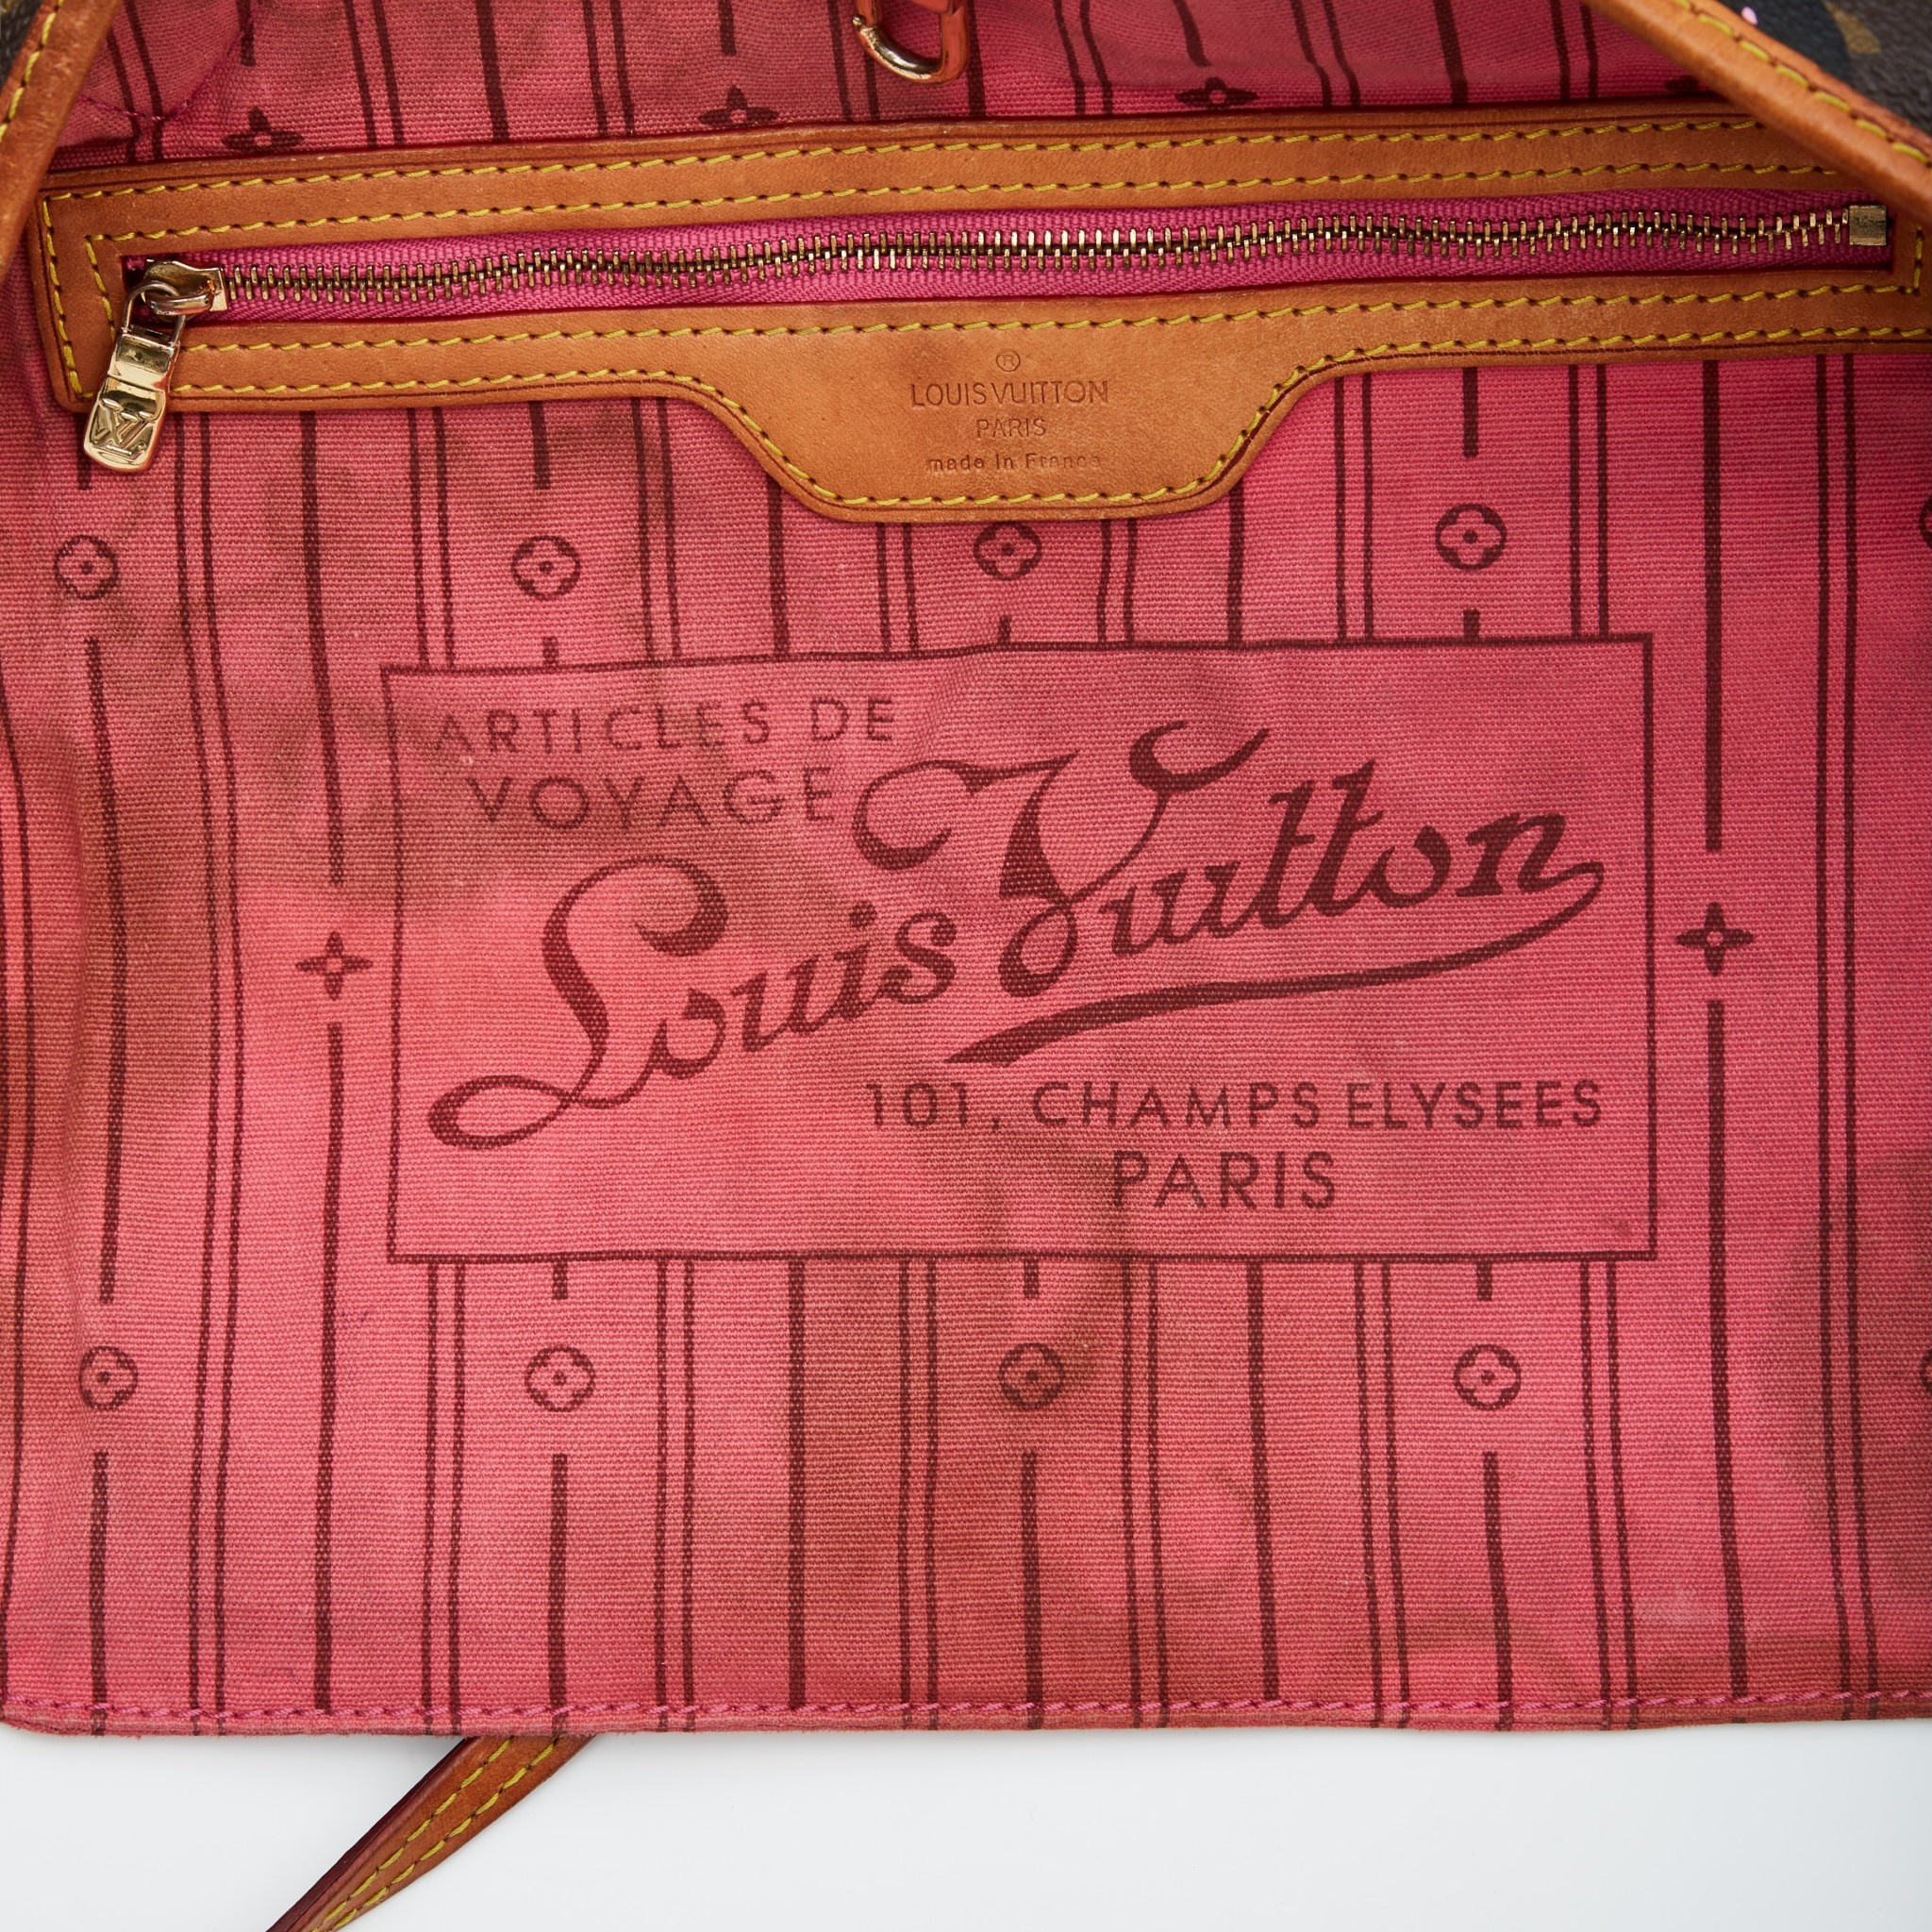 Articles de voyage Louis Vuitton 101, Champs Elysees Paris